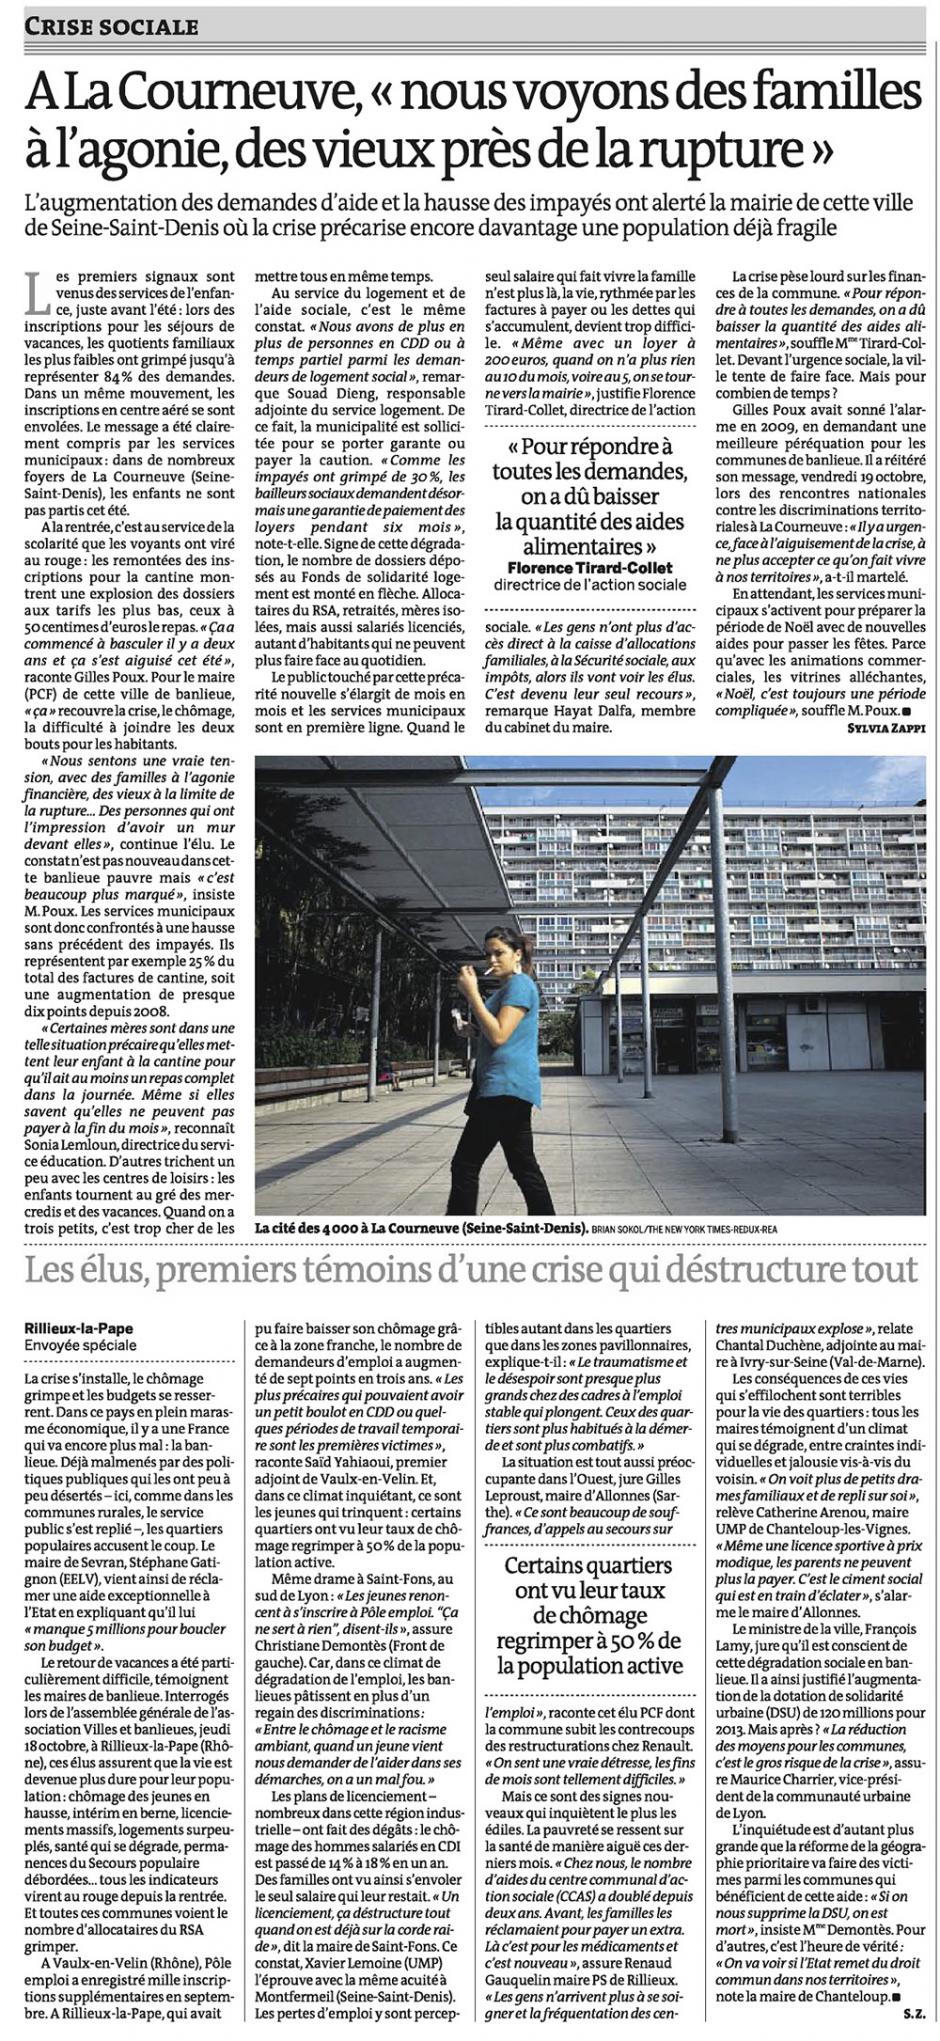 20121024-Le Monde-À la Courneuve, « nous voyons des familles à l'agonie, des vieux près de la rupture »